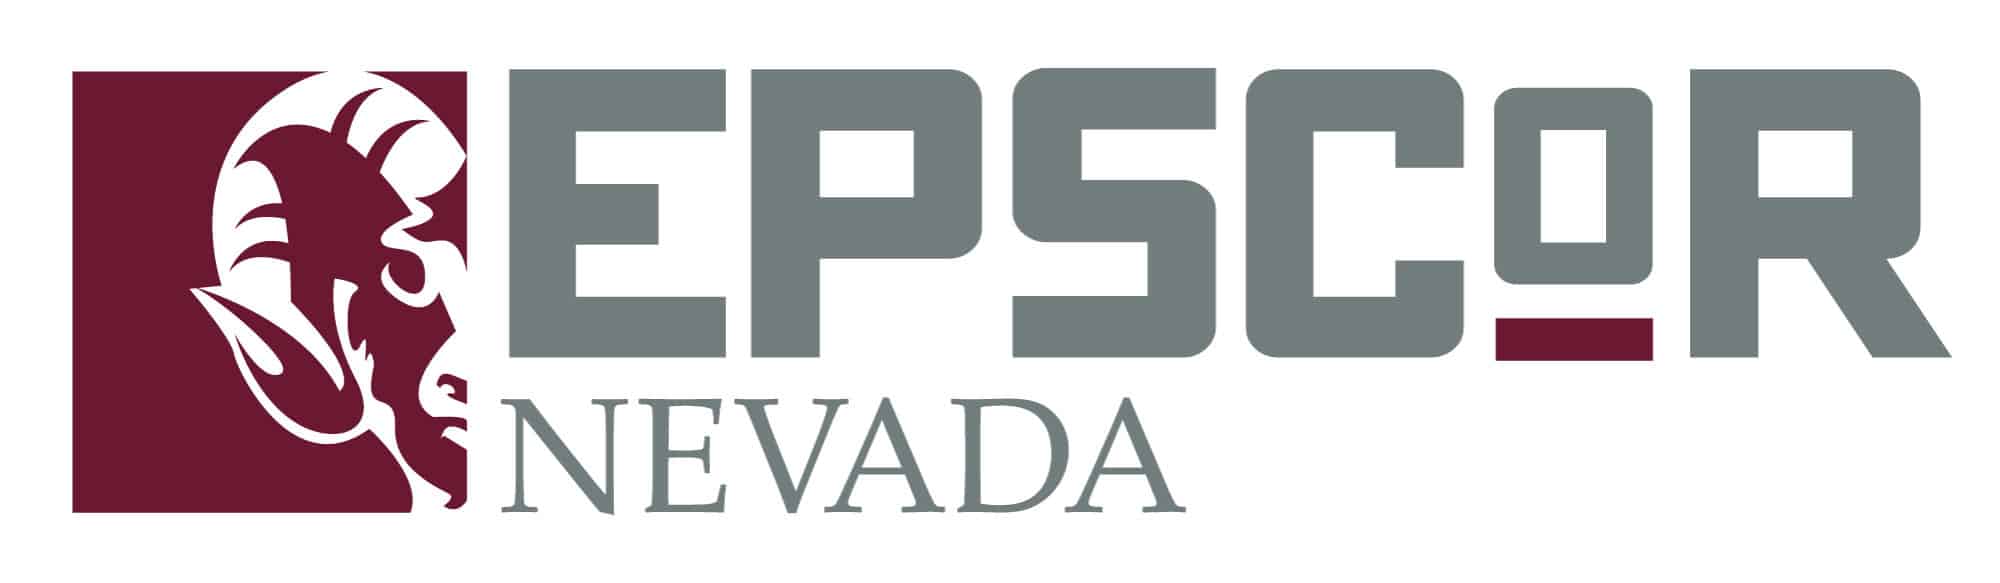 Nevada EPSCoR